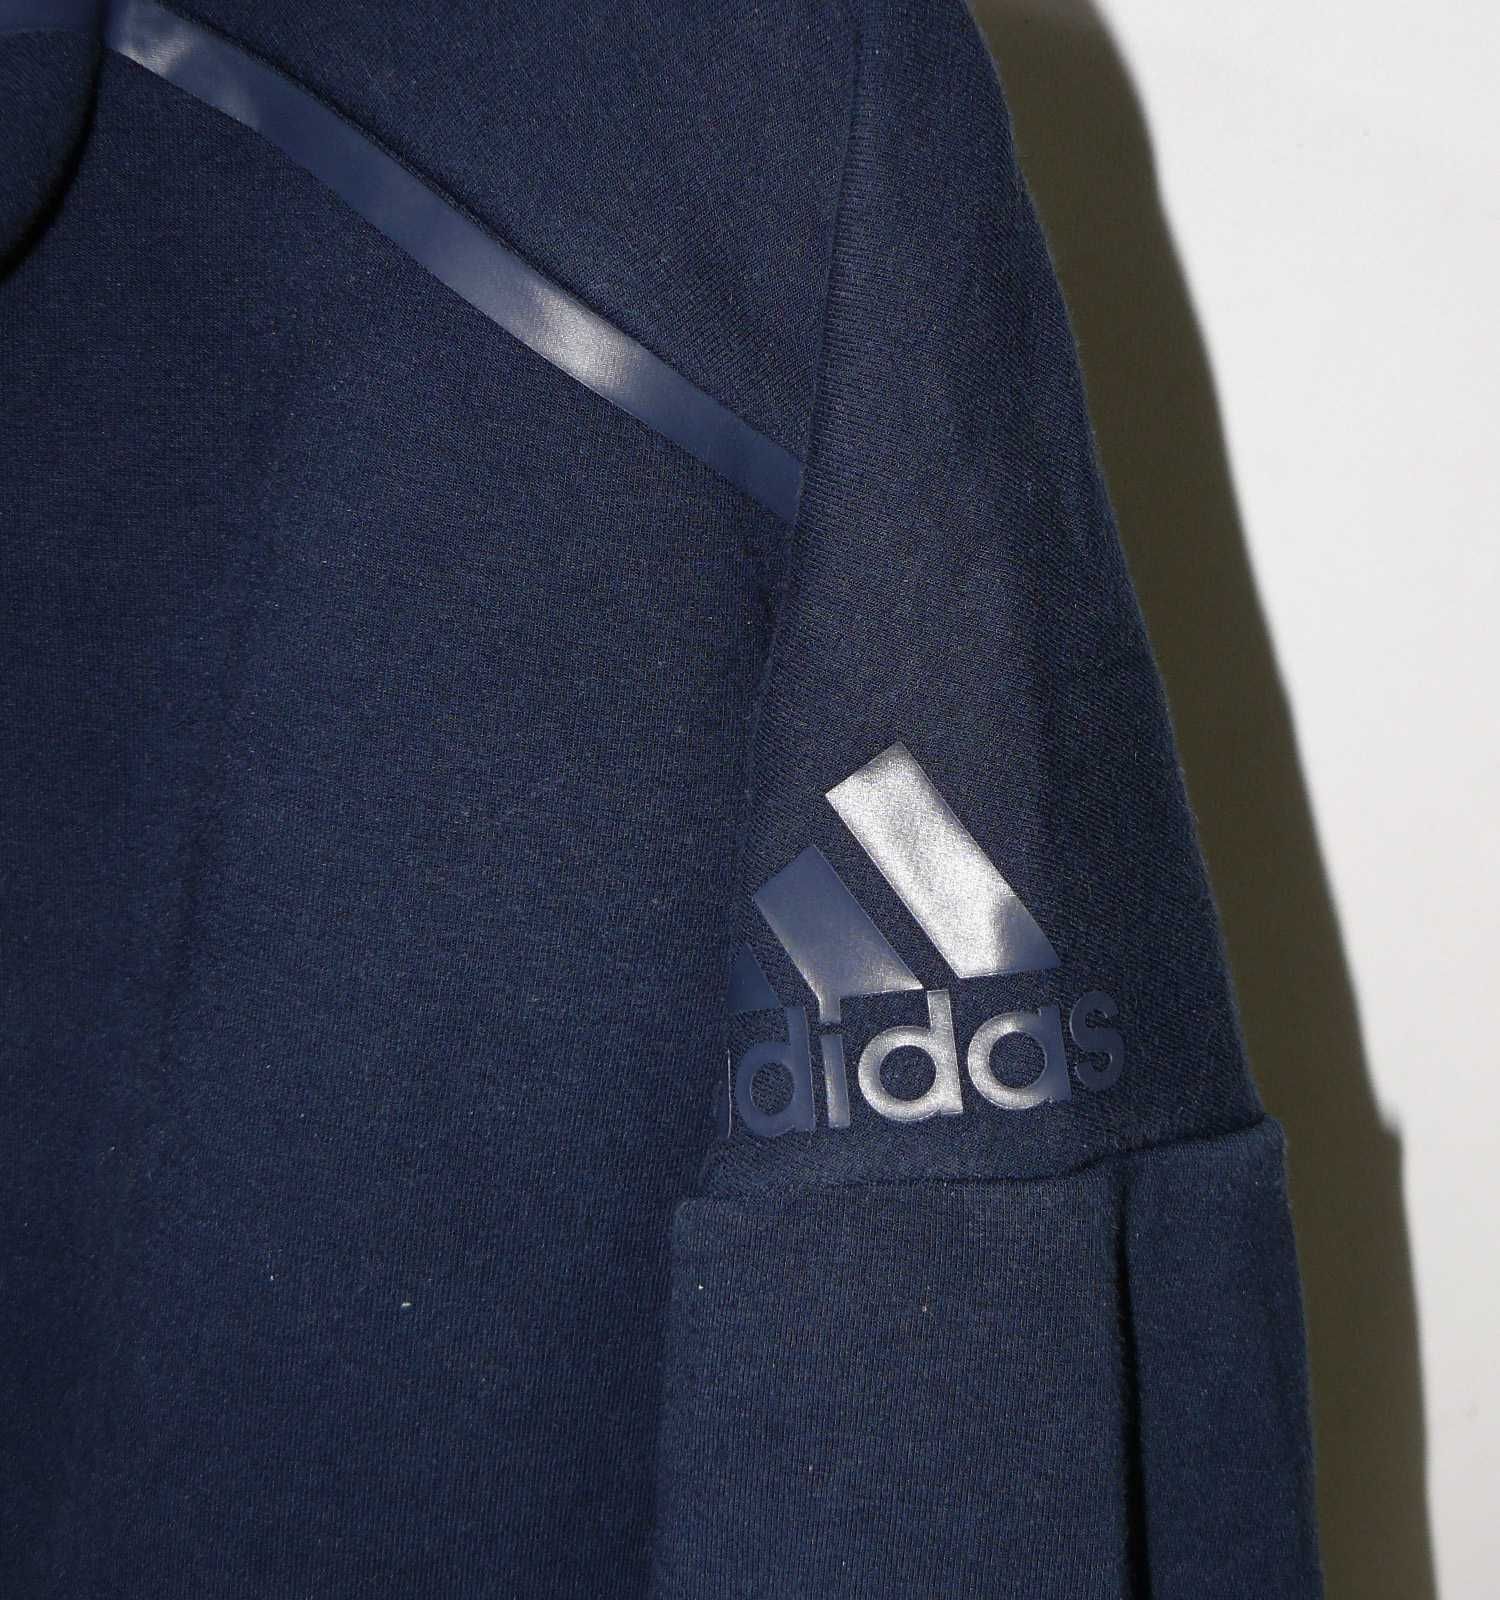 Adidas Atrakcyjna markowa bluza roz S